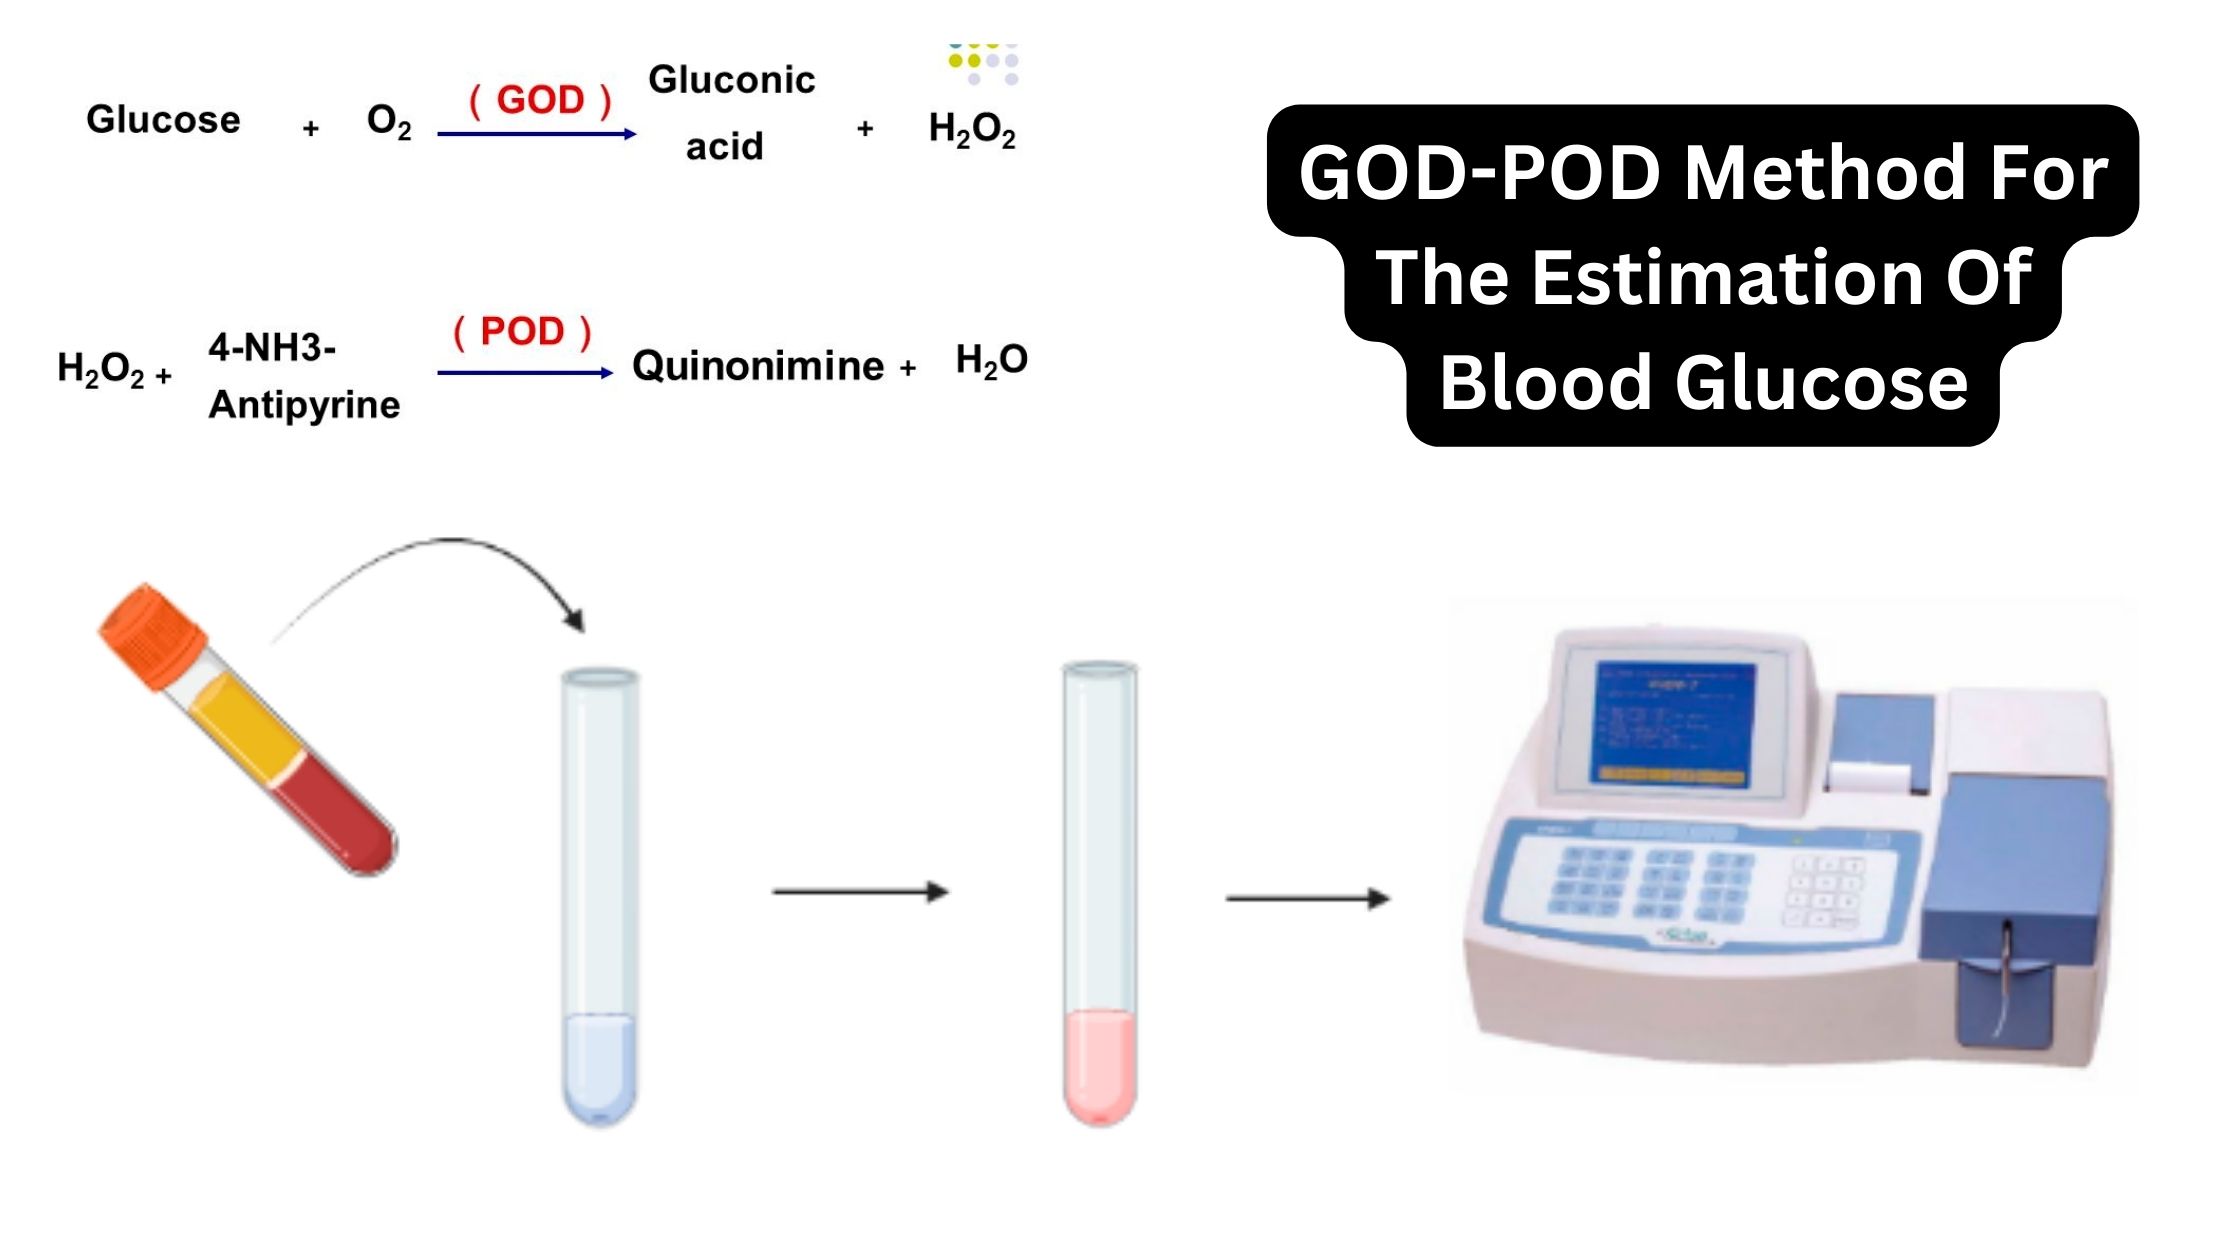 GOD-POD Method For The Estimation Of Blood Glucose